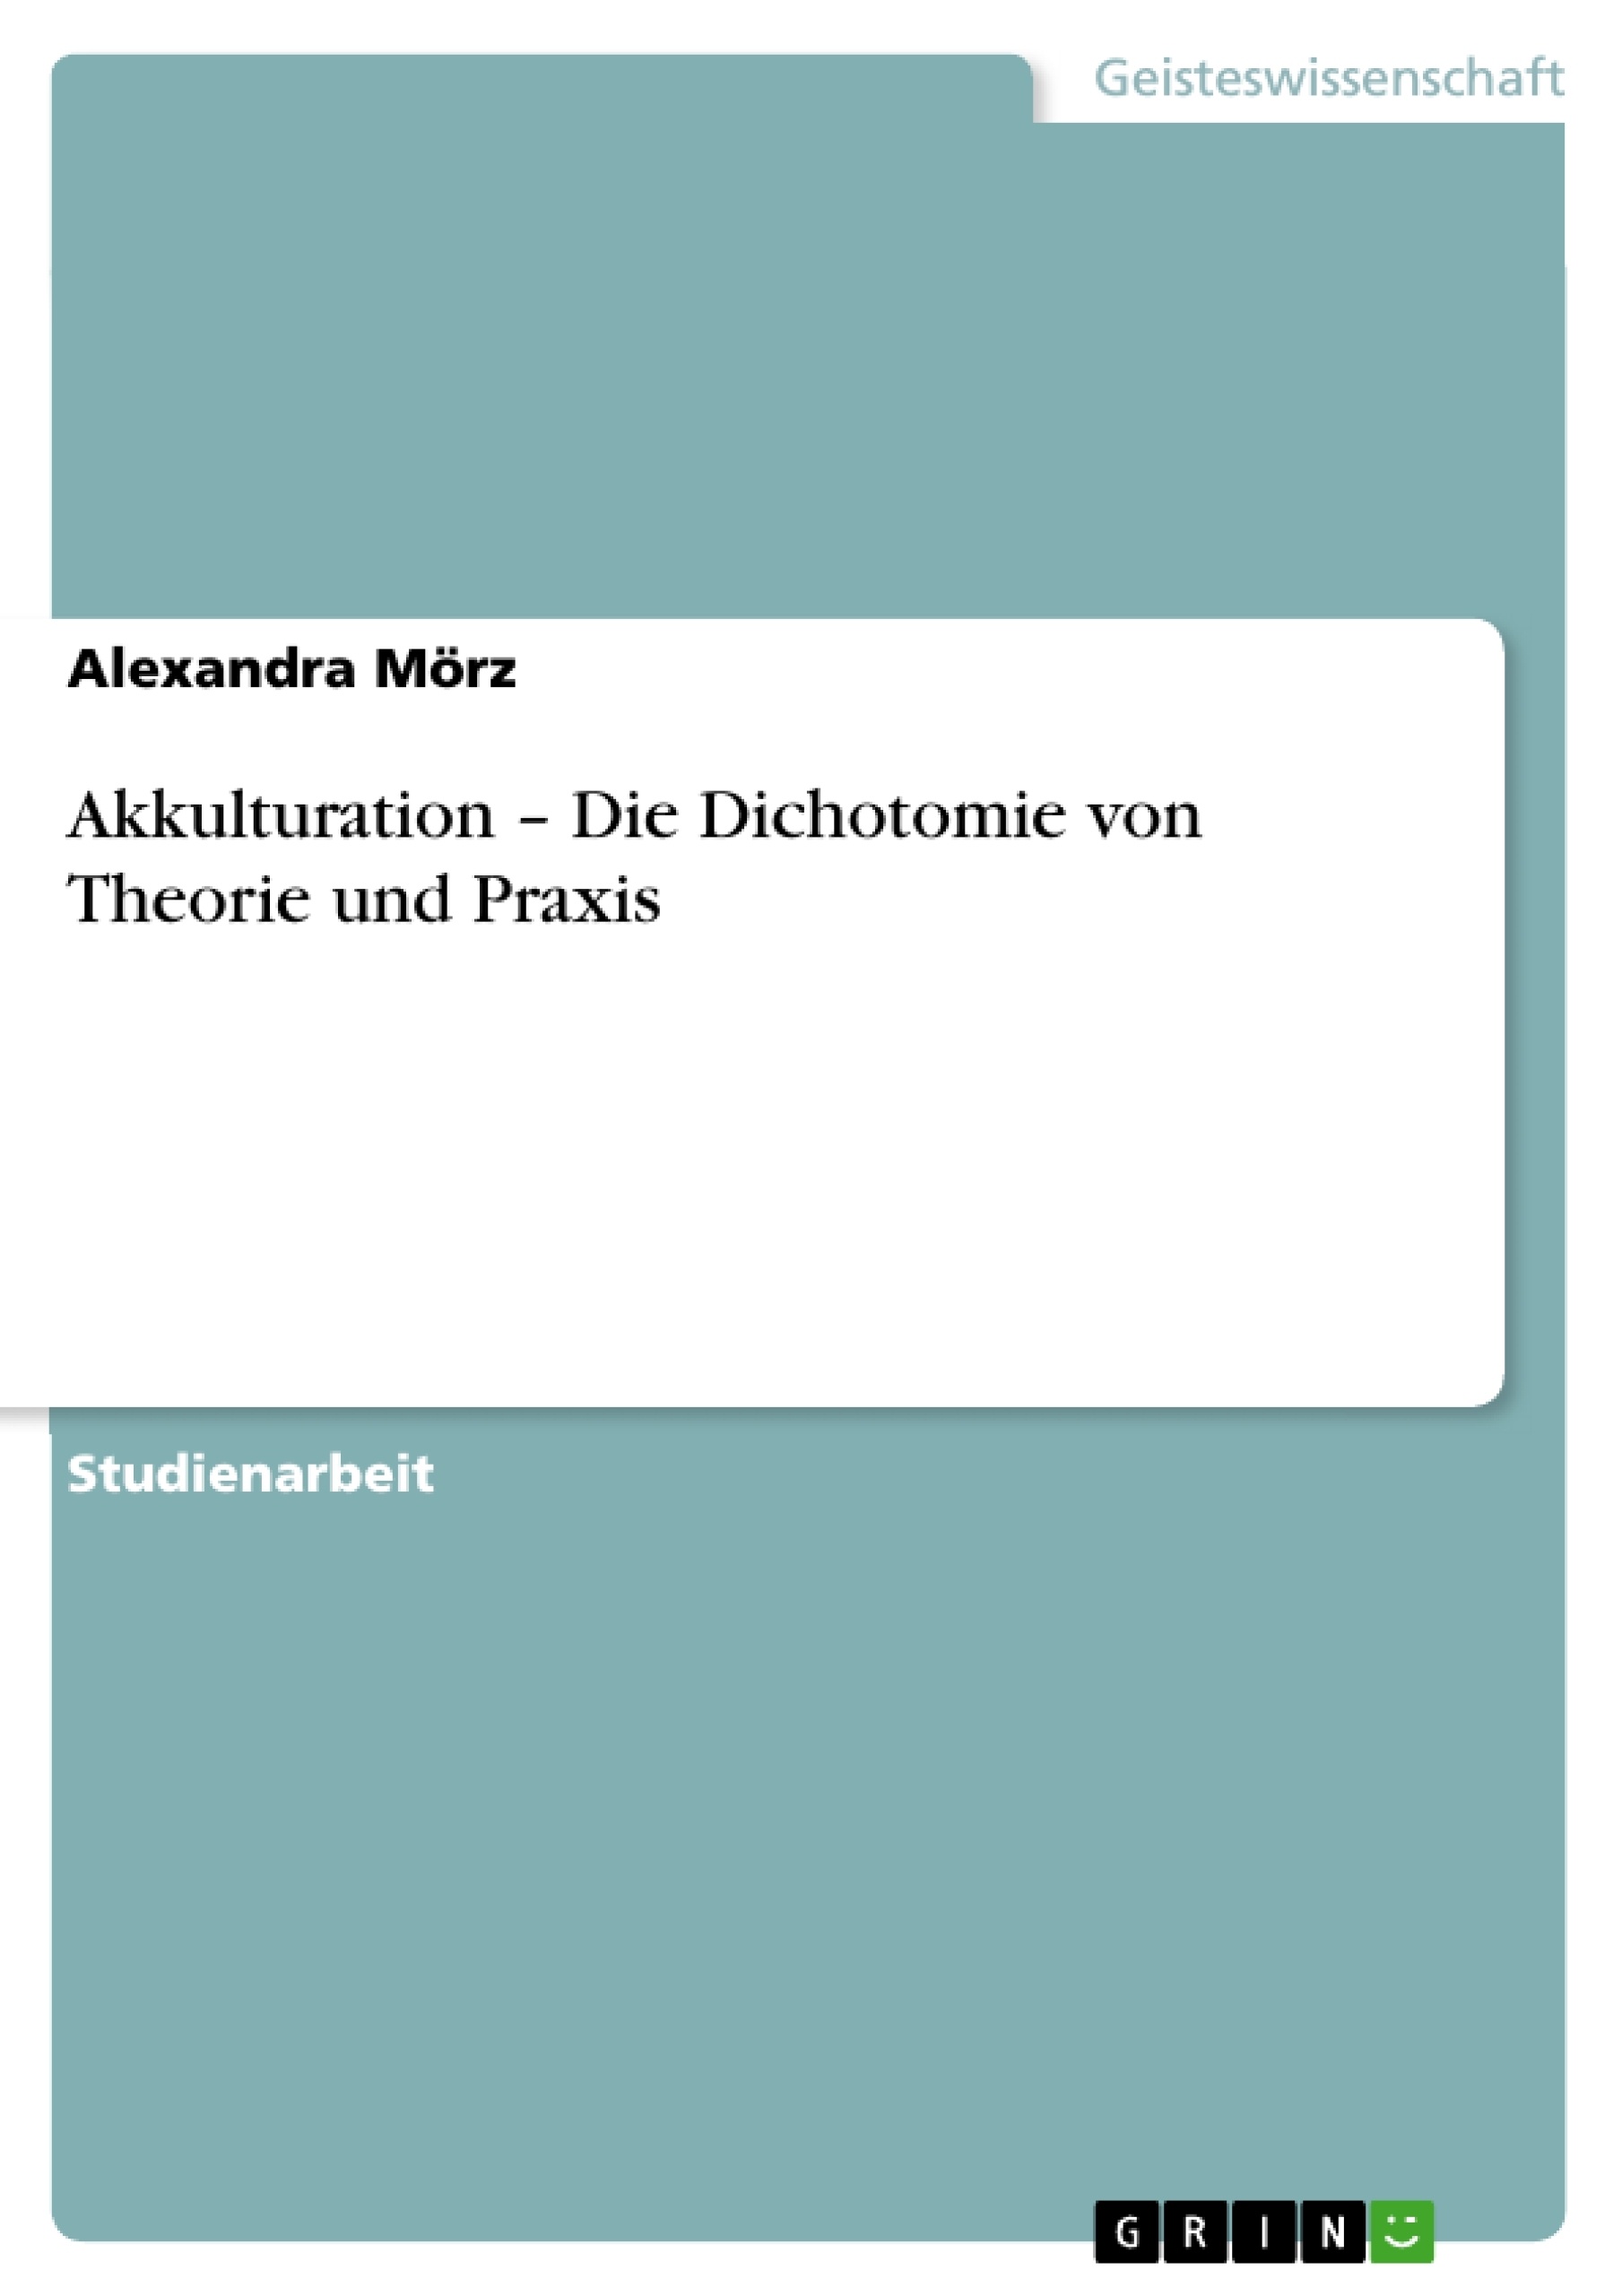 Title: Akkulturation – Die Dichotomie von Theorie und Praxis